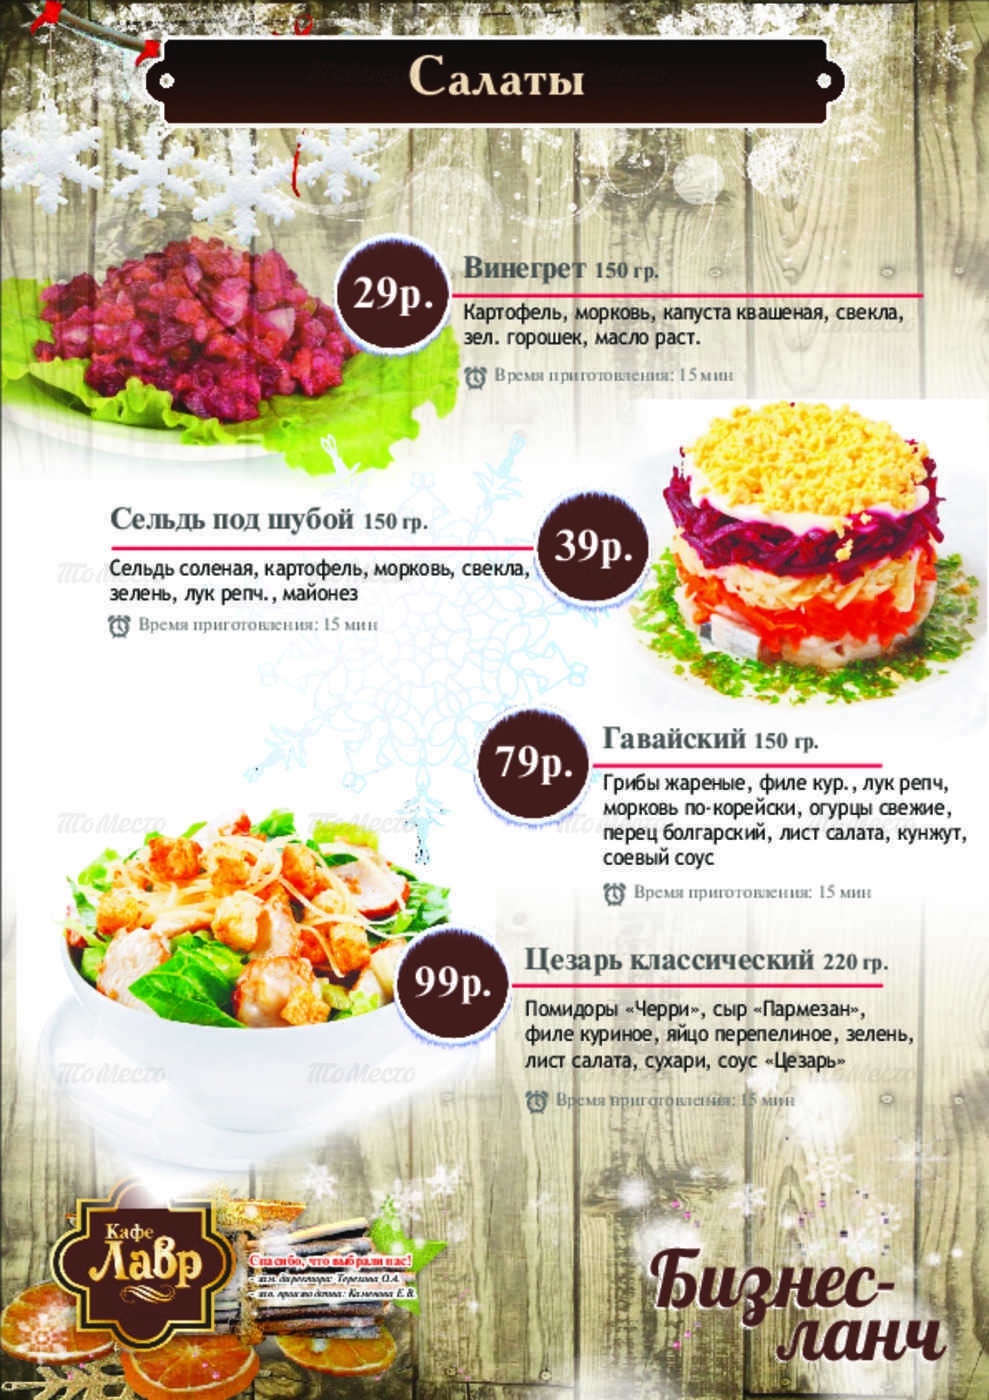 Кафе лавр омск официальный сайт меню цены